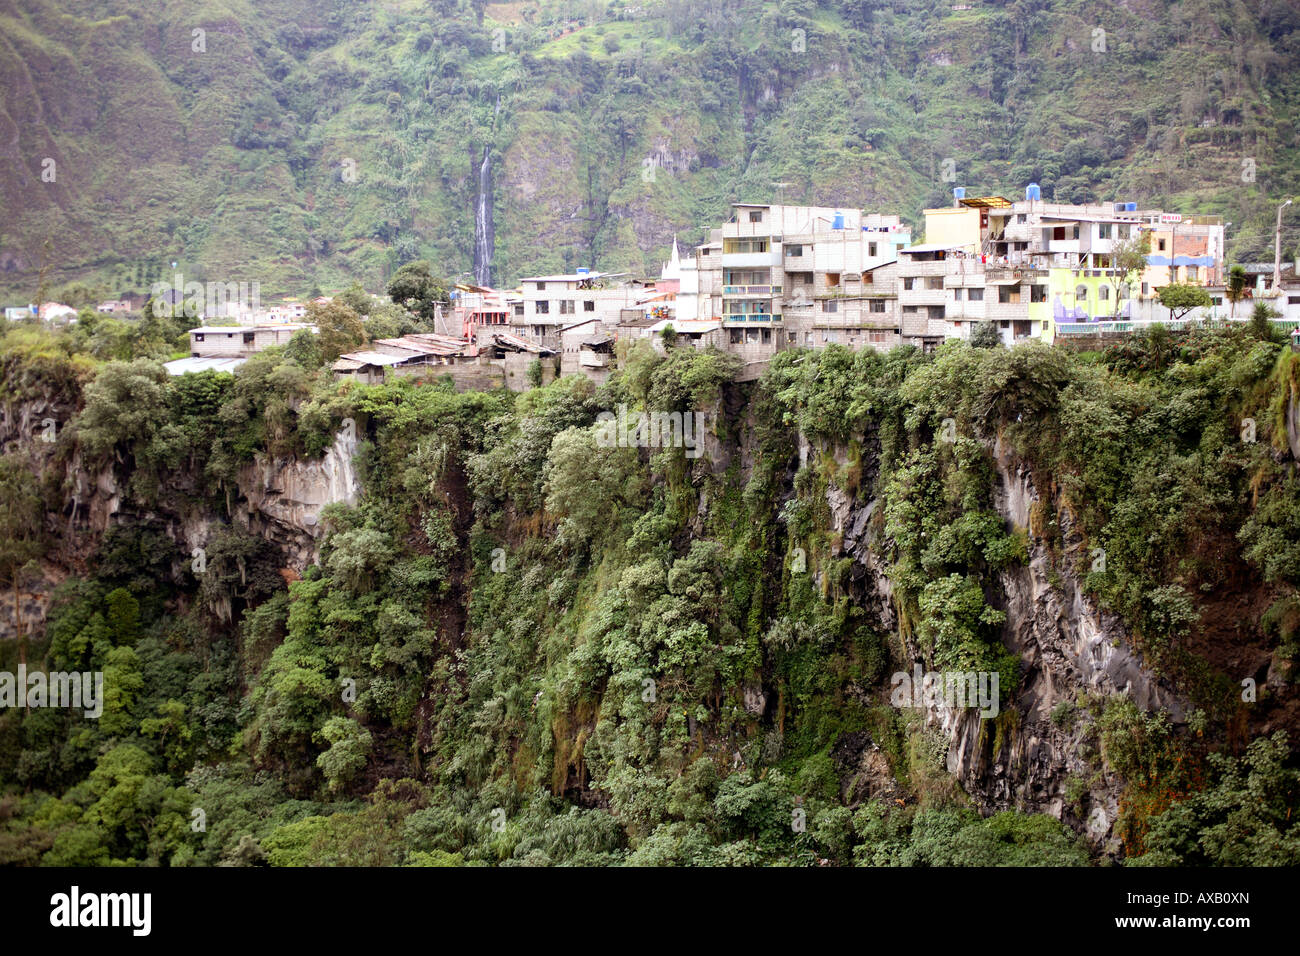 Edifici appollaiato sul bordo di una scogliera di basalto, parte della città di Banos, Ecuador Foto Stock